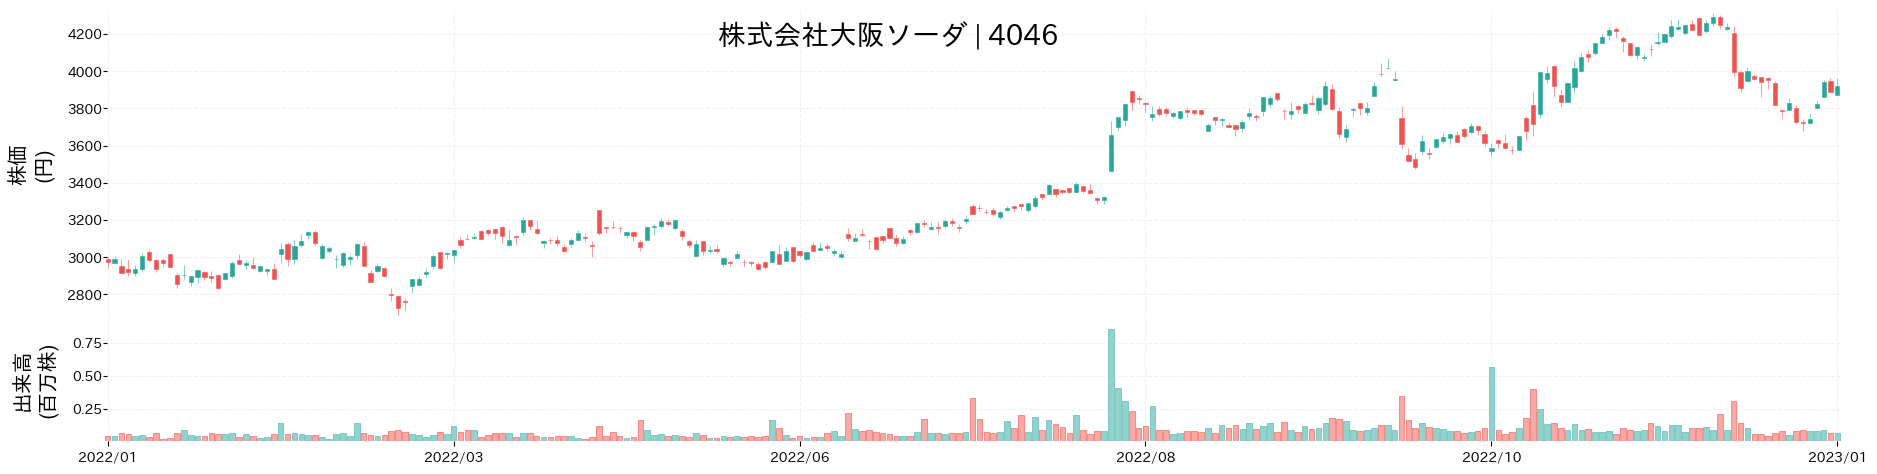 大阪ソーダの株価推移(2022)